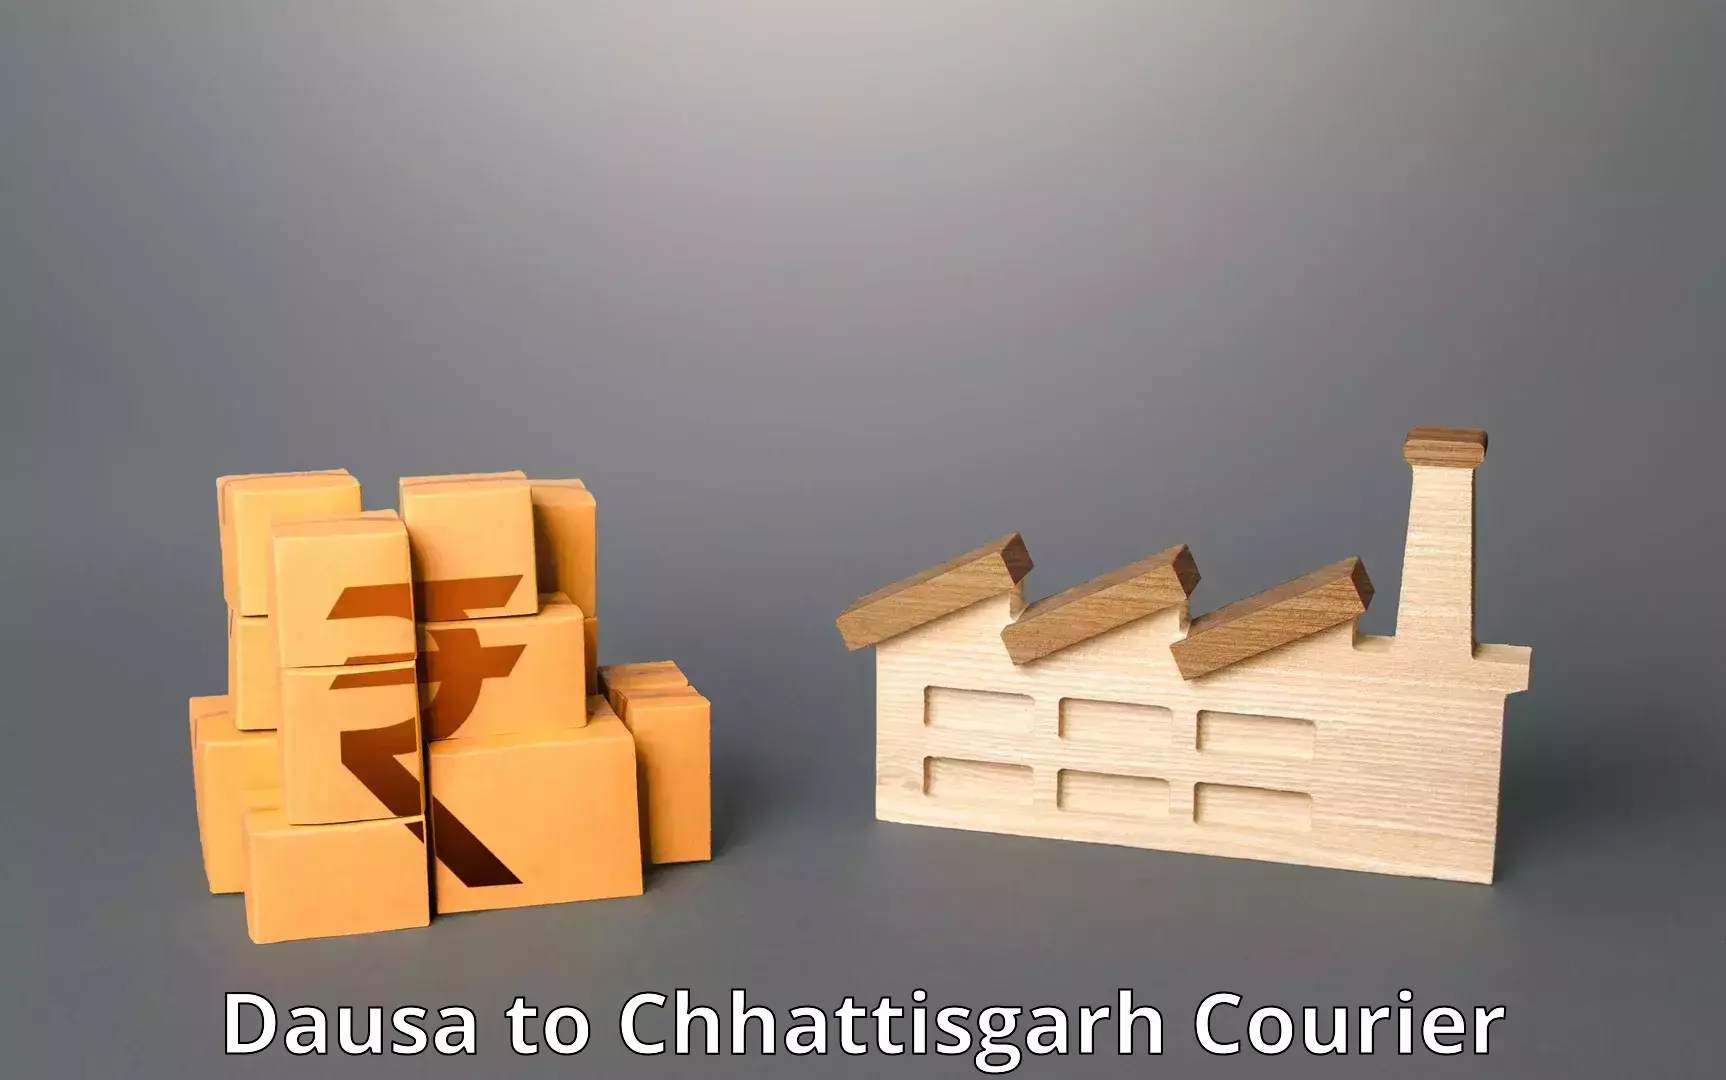 Next-day freight services Dausa to Chhattisgarh